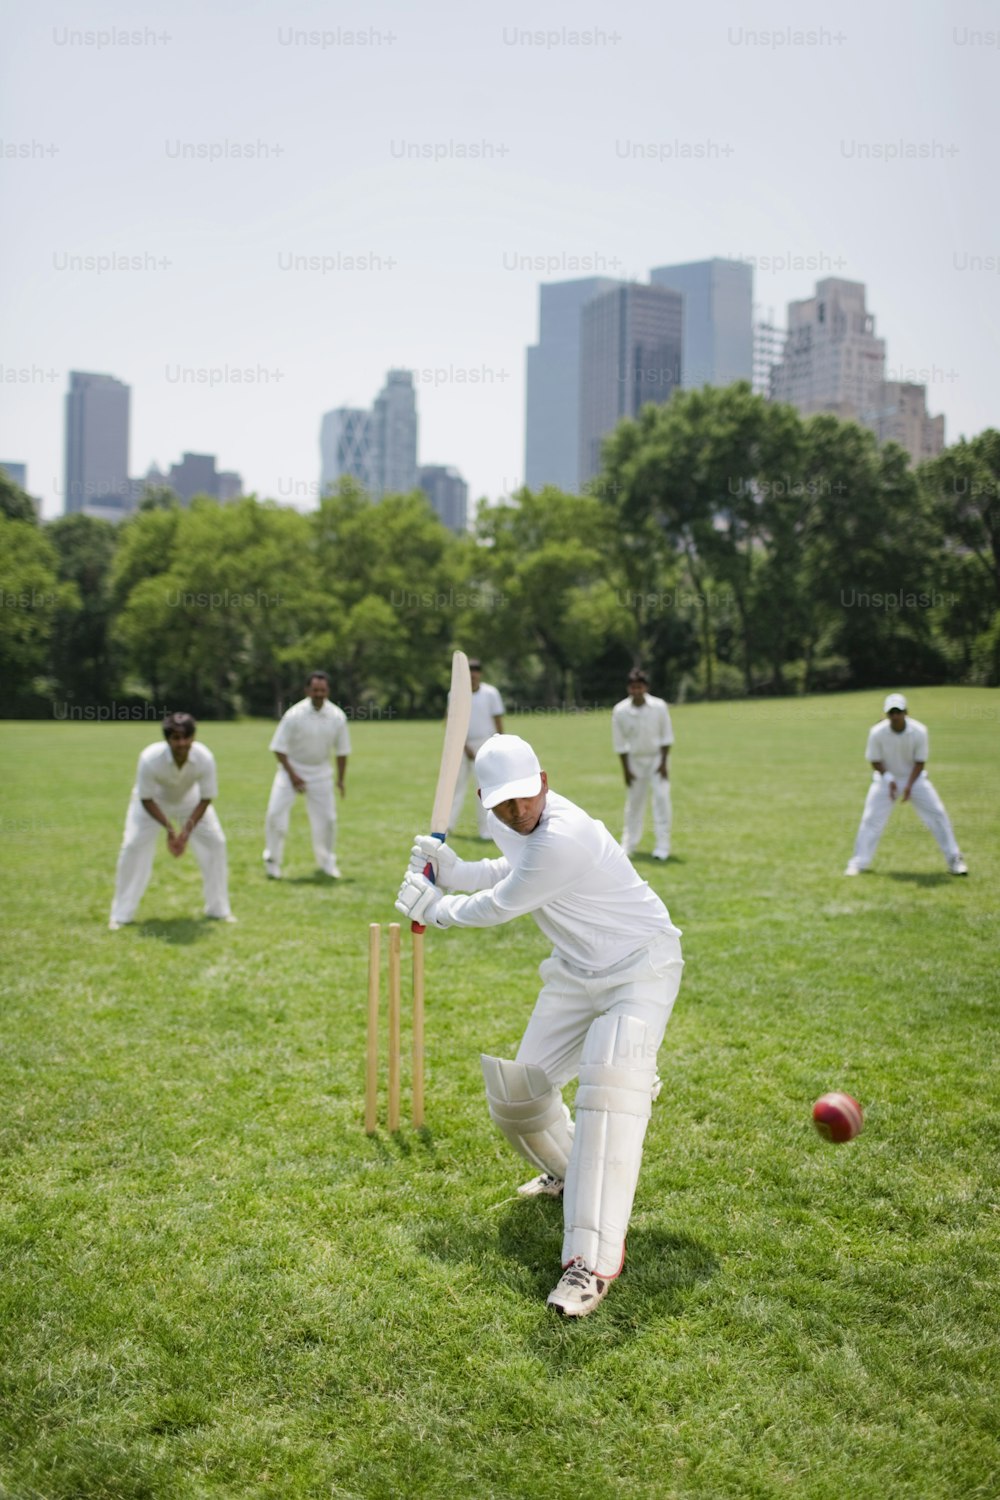 Imágenes Equipo Cricket | Descarga gratuitas Unsplash